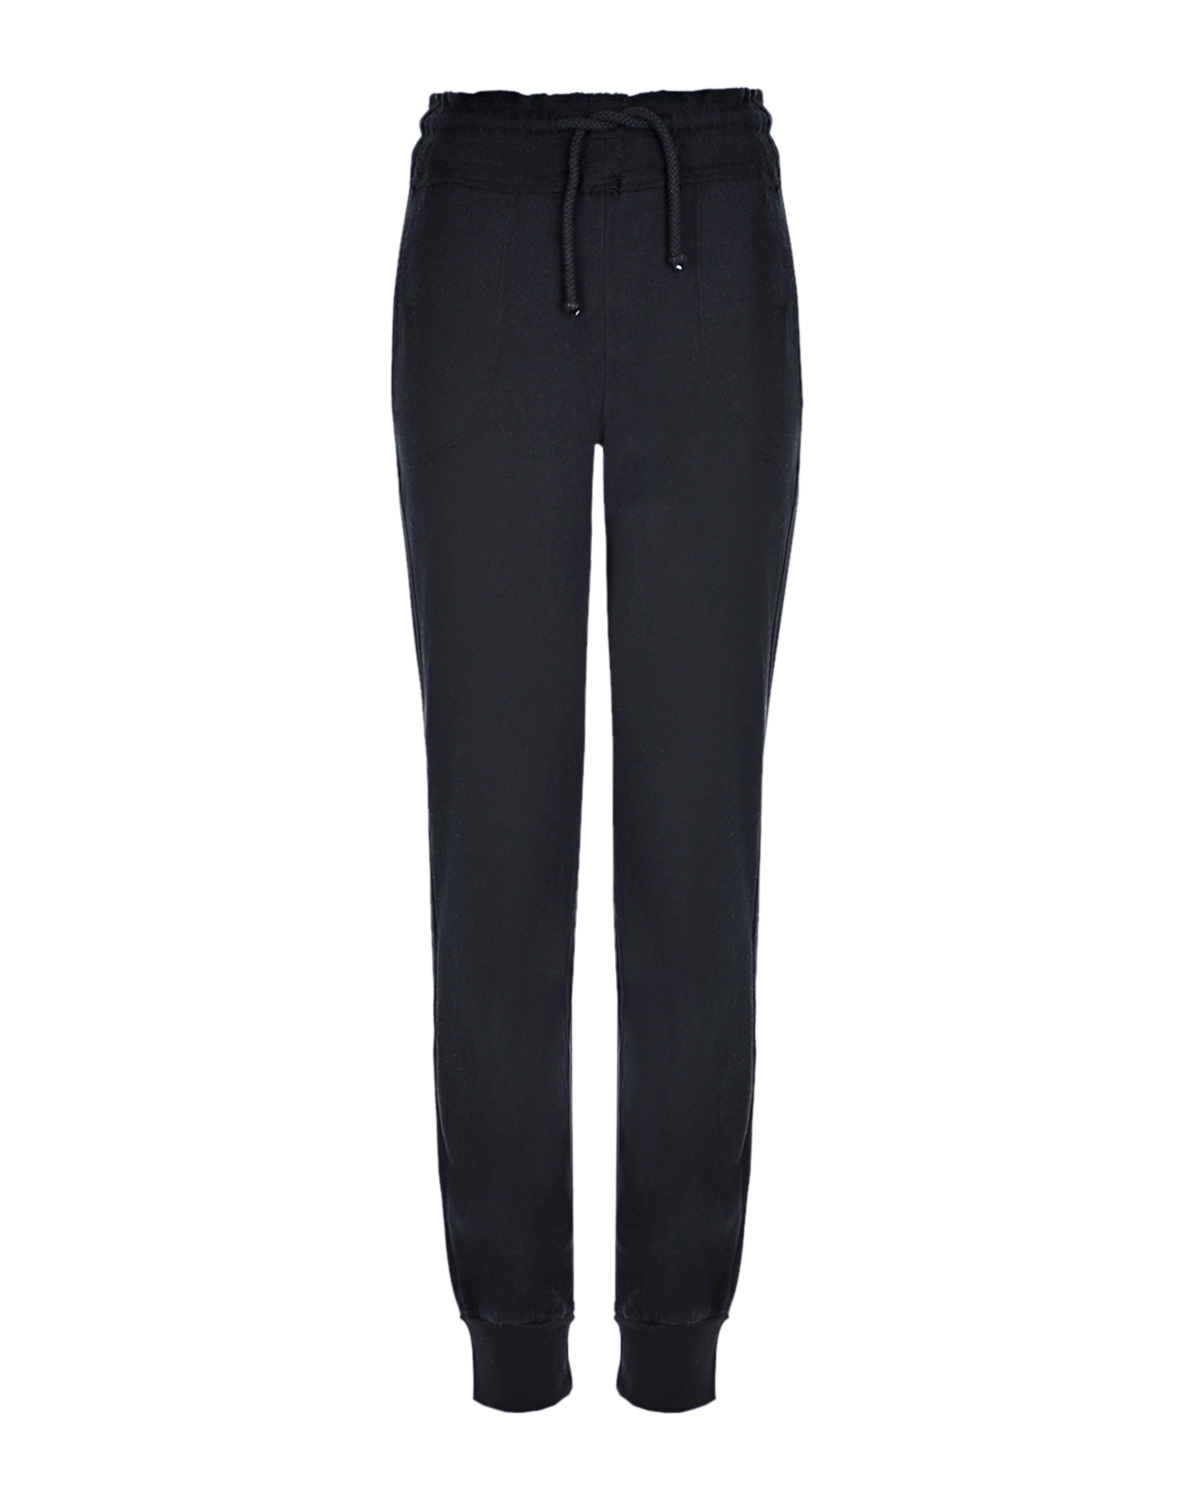 Черные спортивные брюки из хлопка Deha, размер 40, цвет черный - фото 1